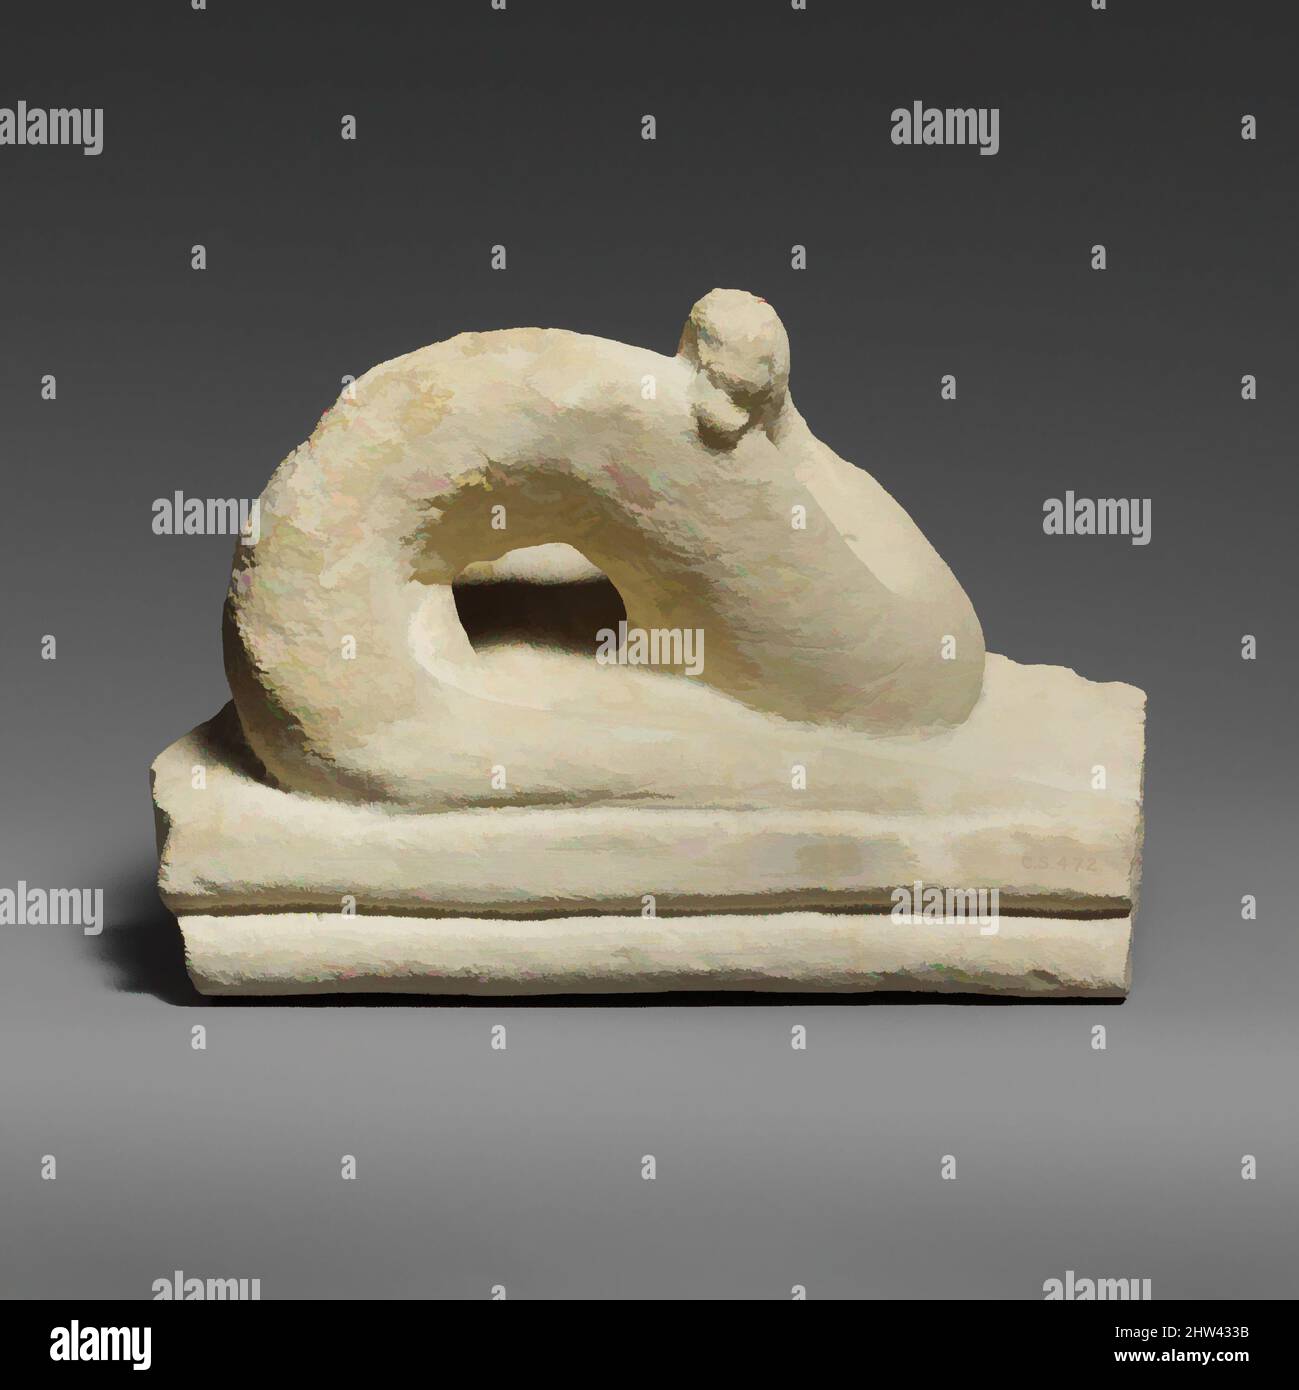 Art inspiré par deux fragments d'un sarcophage calcaire avec des serpents, classique, première moitié du siècle 5th av. J.-C., chypriote, calcaire, total: 8 x 11 1/2 x 8 1/4 po. (20,3 x 29,2 x 21 cm), Sculpture de pierre, les deux fragments non joints appartiennent au couvercle d'un grand sarcophage, oeuvres classiques modernisées par Artotop avec un peu de modernité. Formes, couleur et valeur, impact visuel accrocheur sur l'art émotions par la liberté d'œuvres d'art d'une manière contemporaine. Un message intemporel qui cherche une nouvelle direction créative. Artistes qui se tournent vers le support numérique et créent le NFT Artotop Banque D'Images